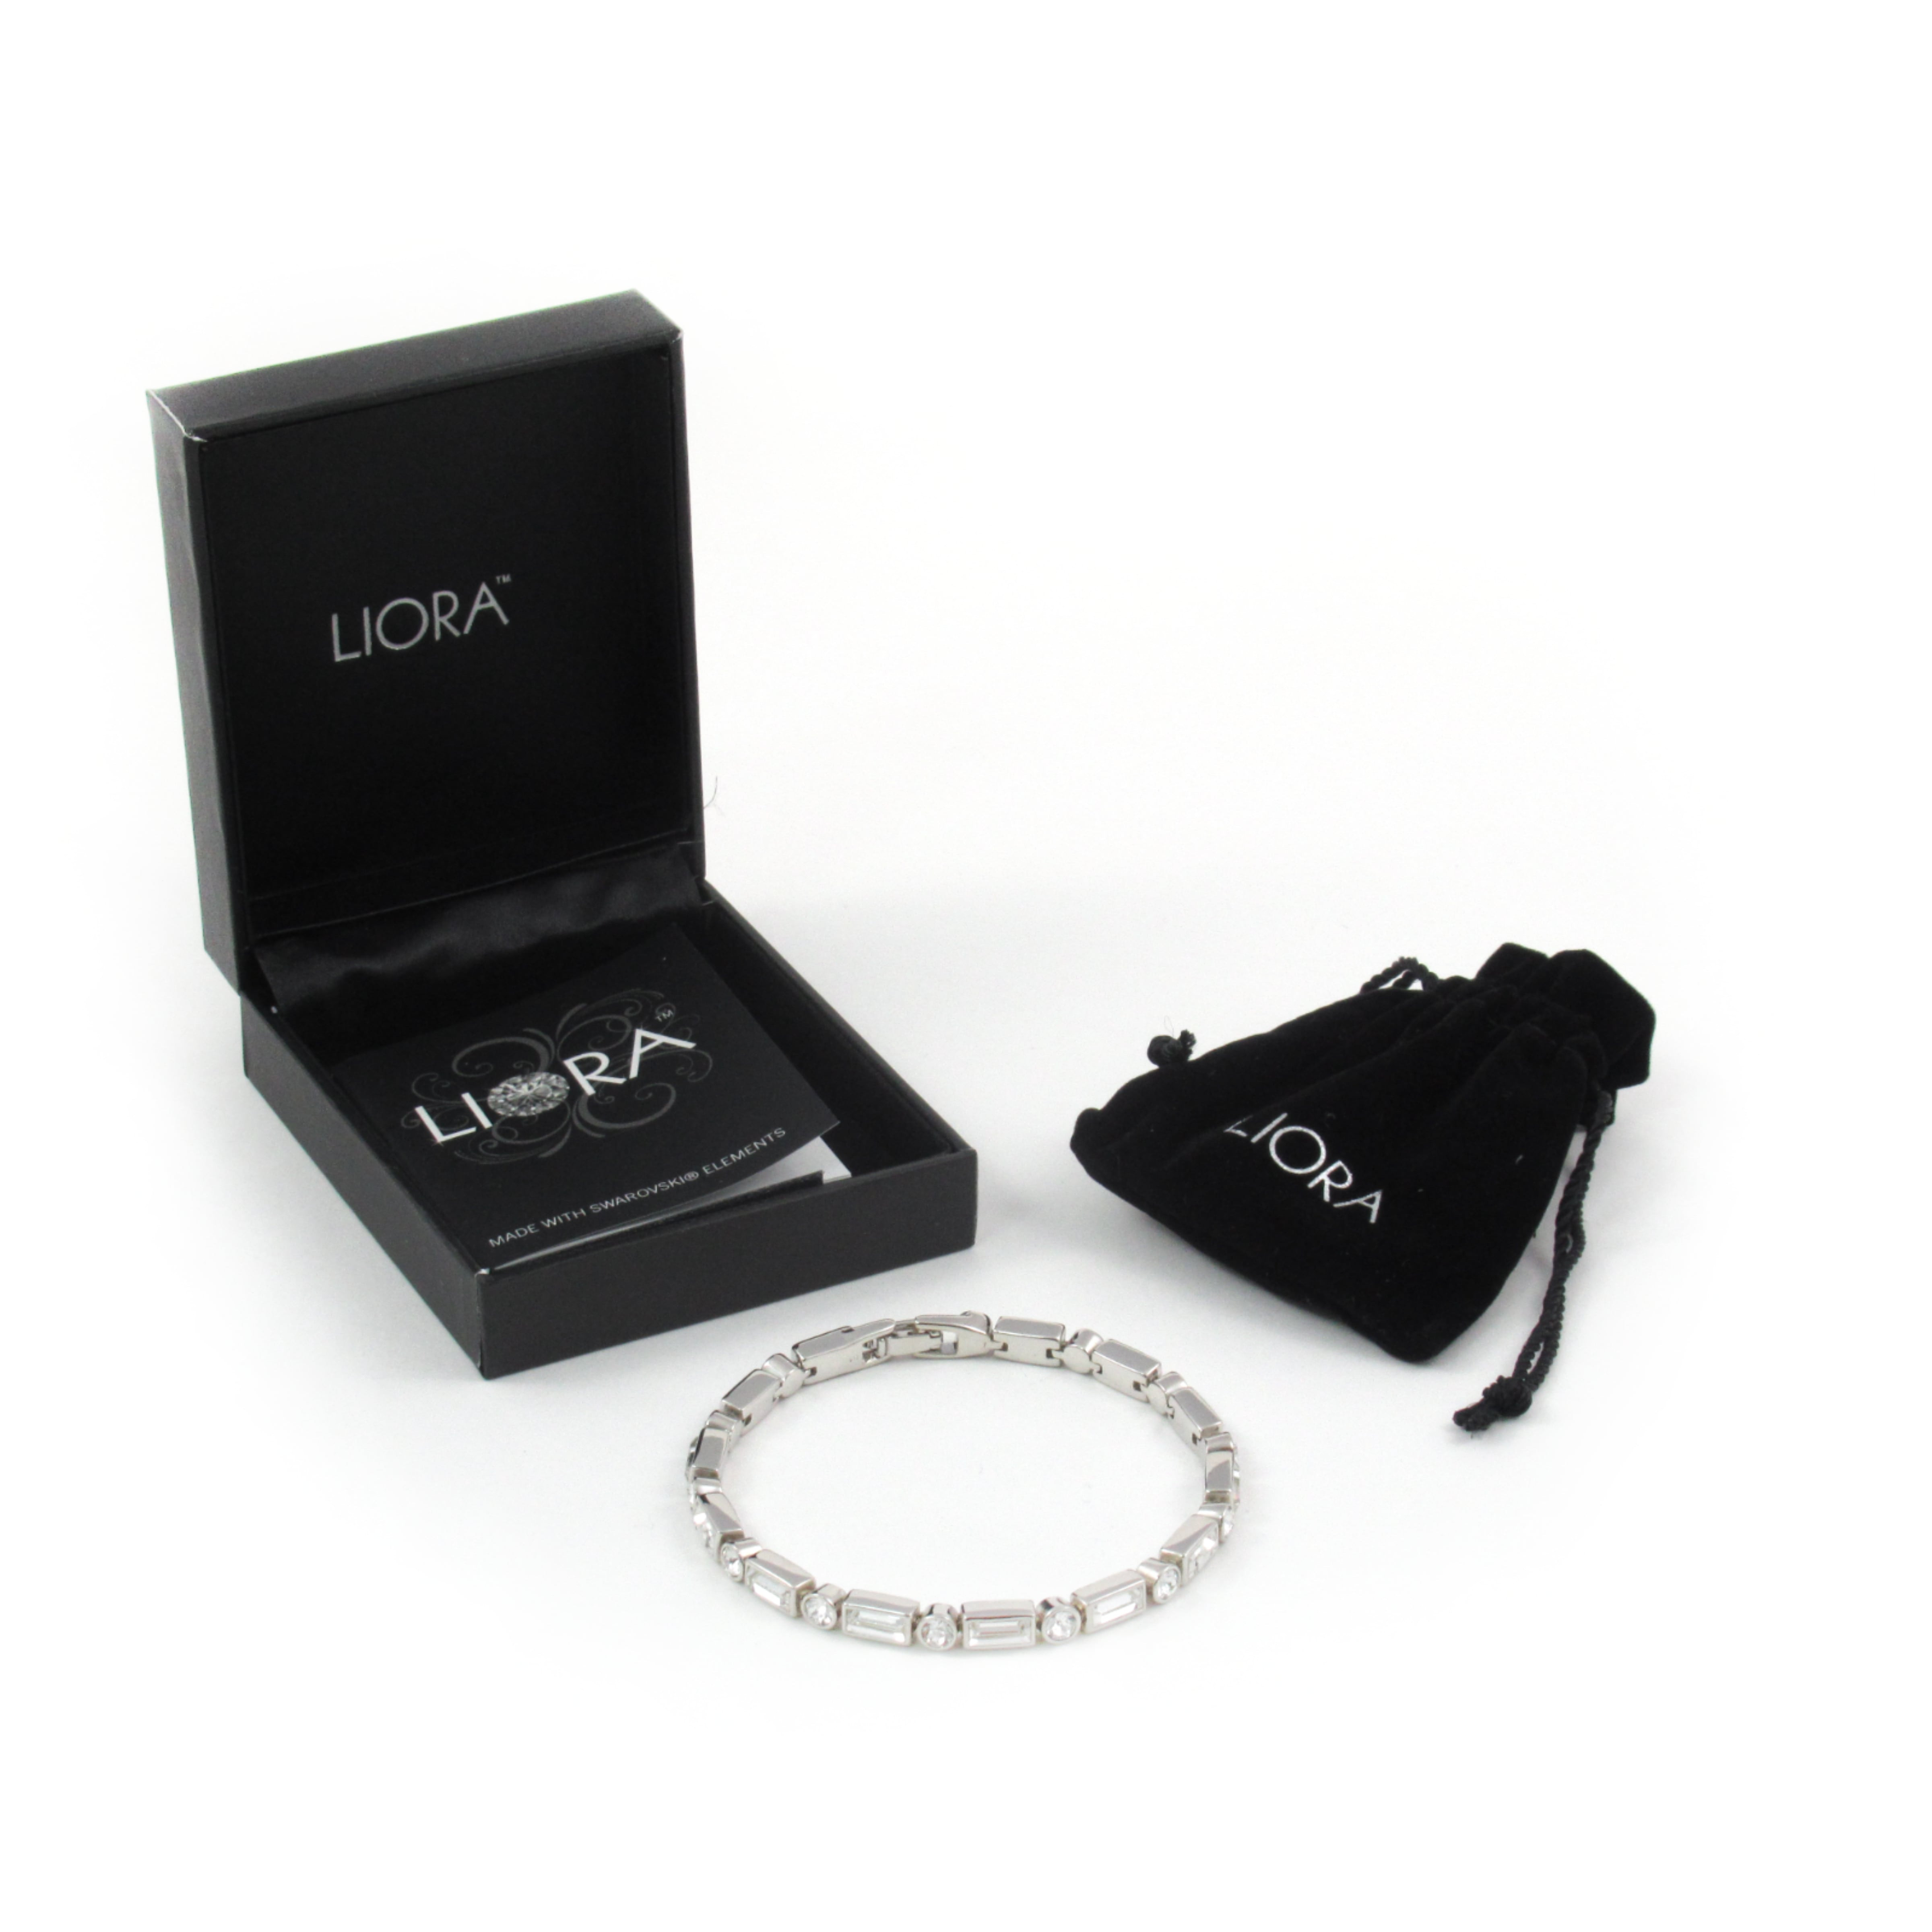 Liora Damen Kristall-Tennisarmband mit Swarovski-Elementen